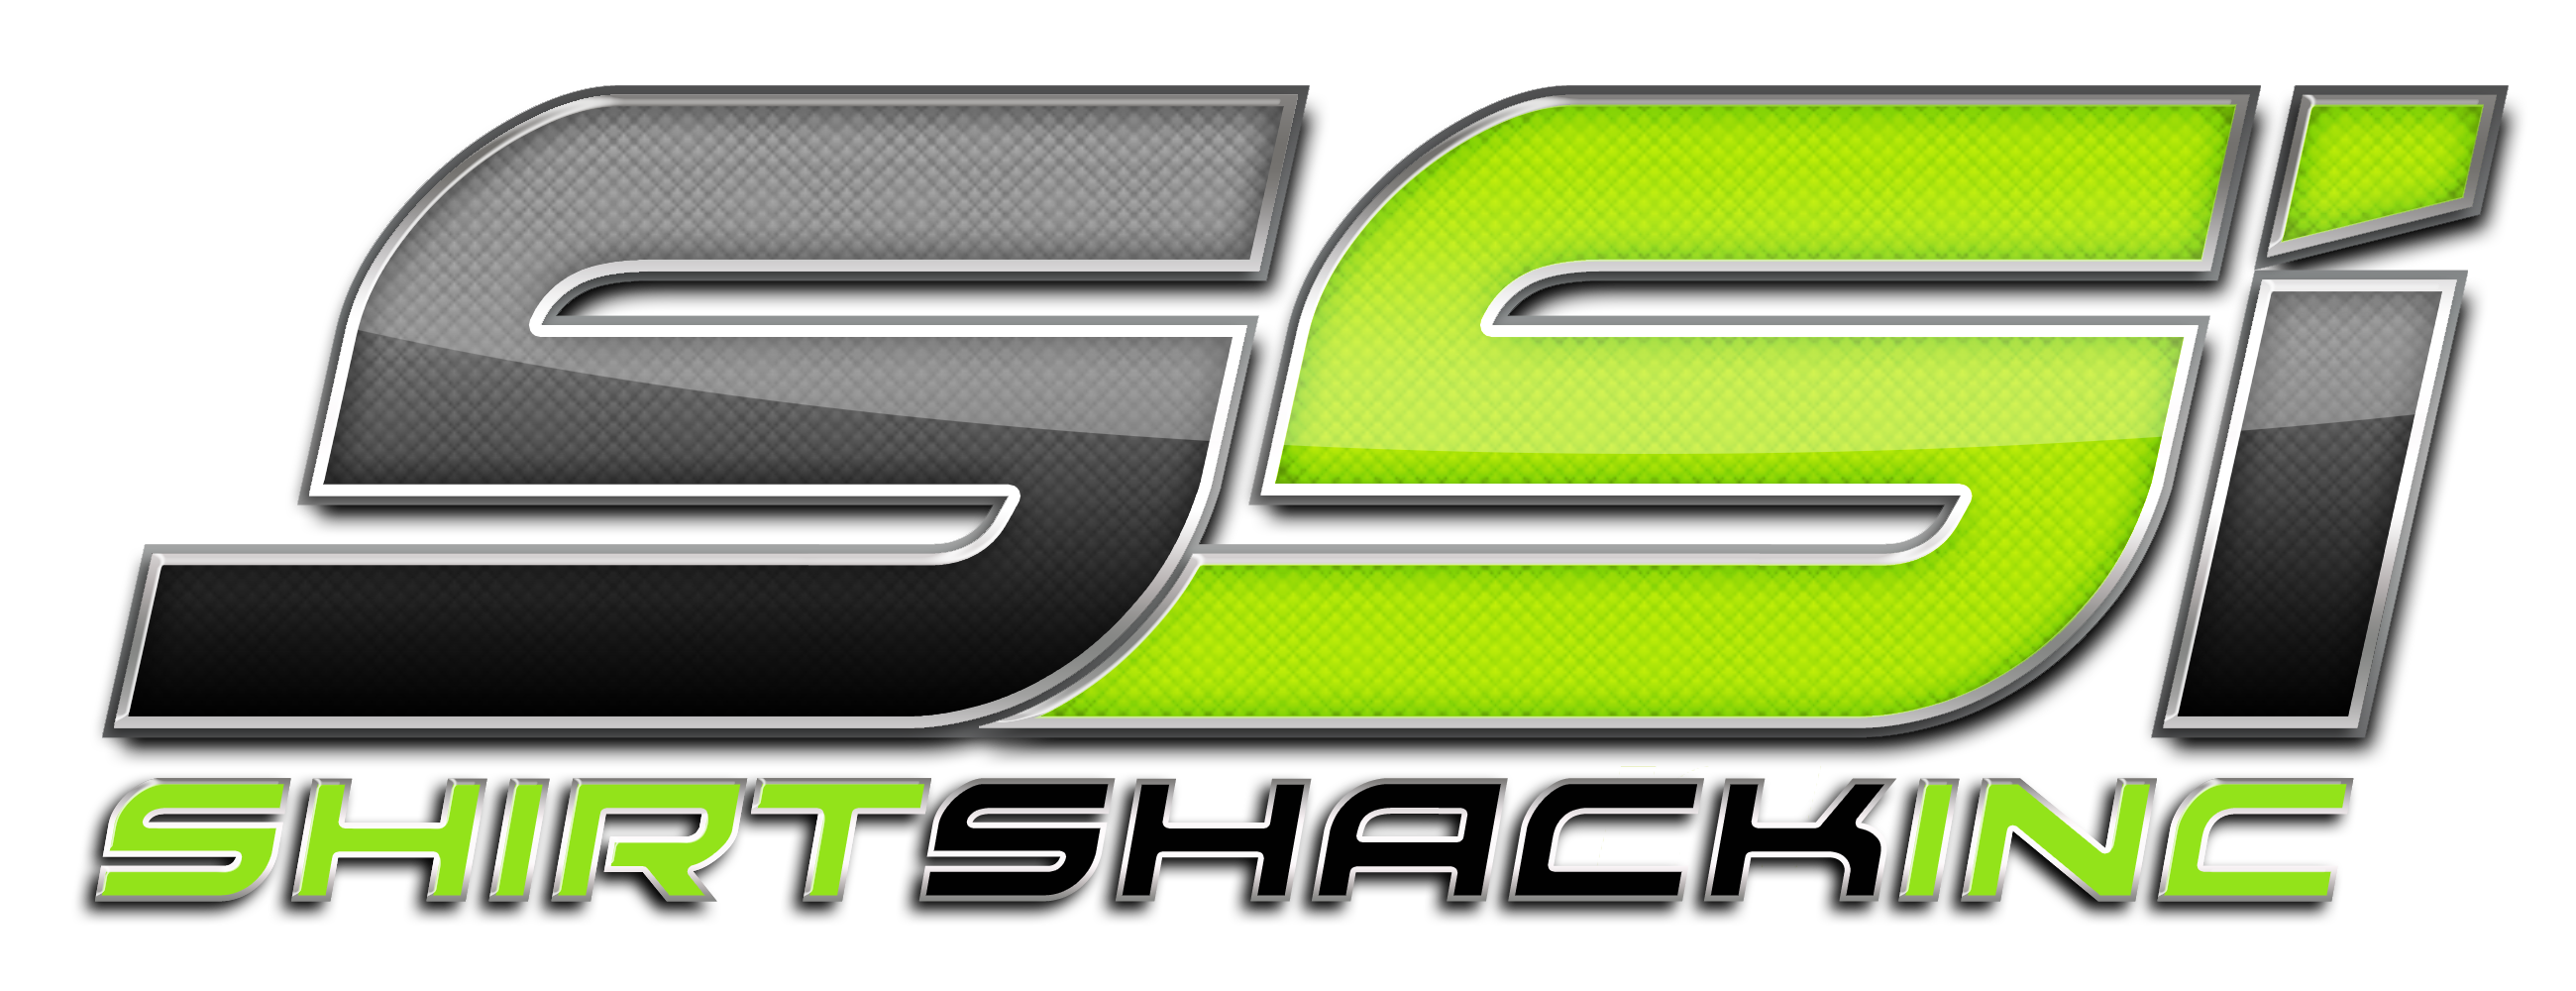 Shirt Shack Logo 